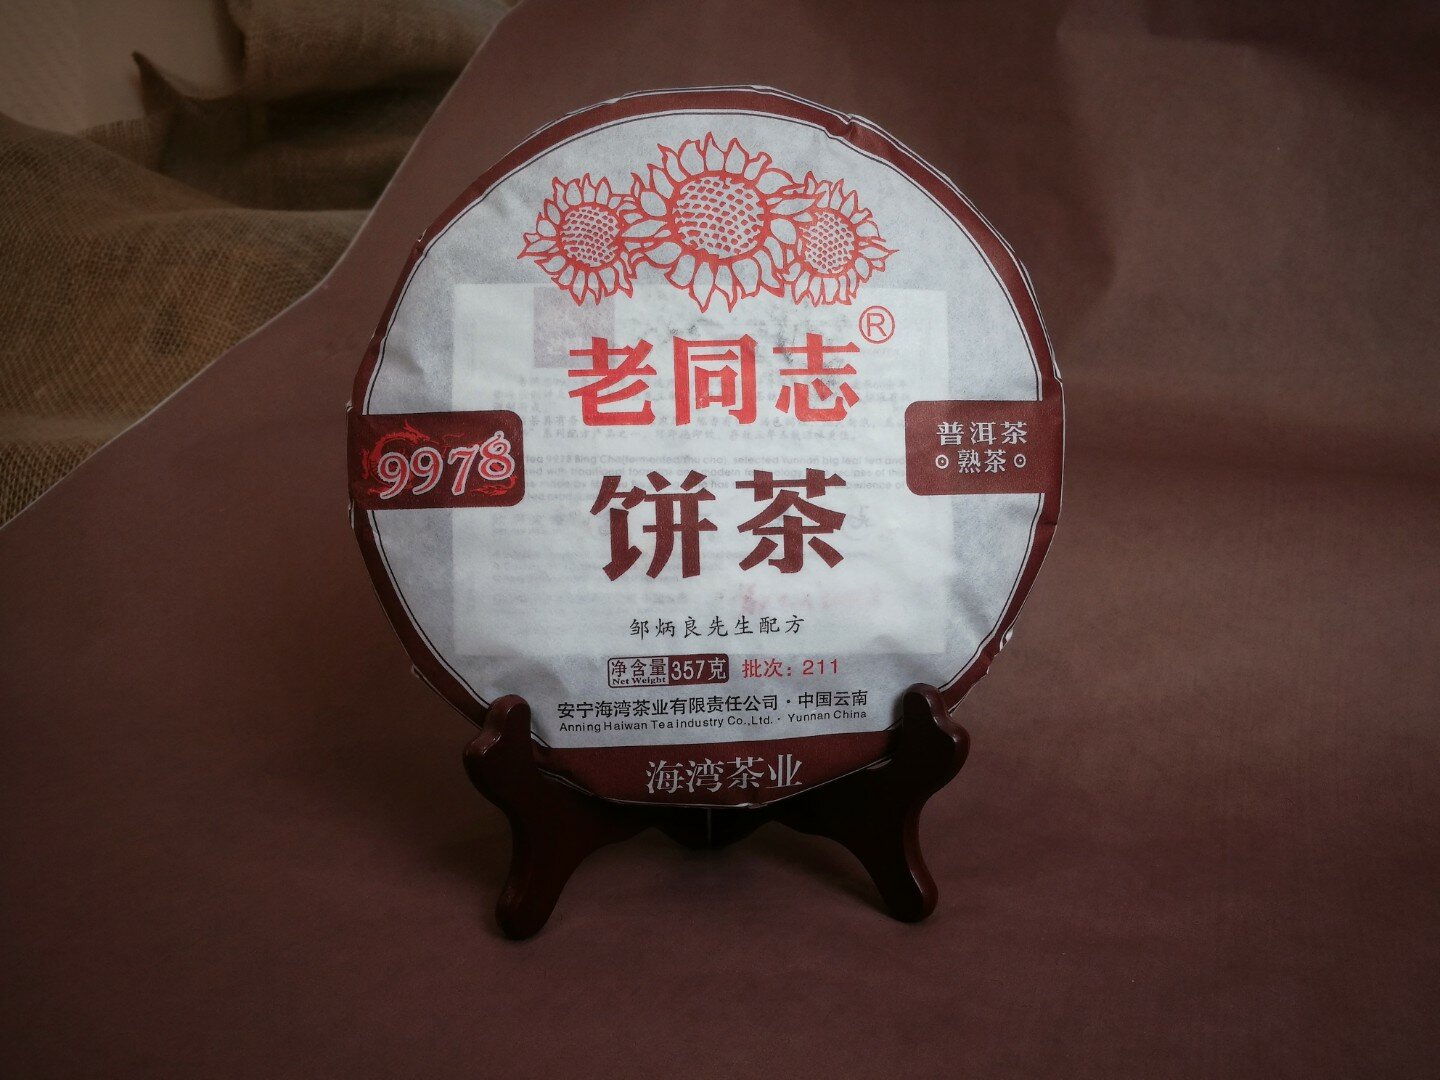 Чай Пуэр Шу - Хайвань Лао Тун Чжи 9978, Китай, 357 гр.